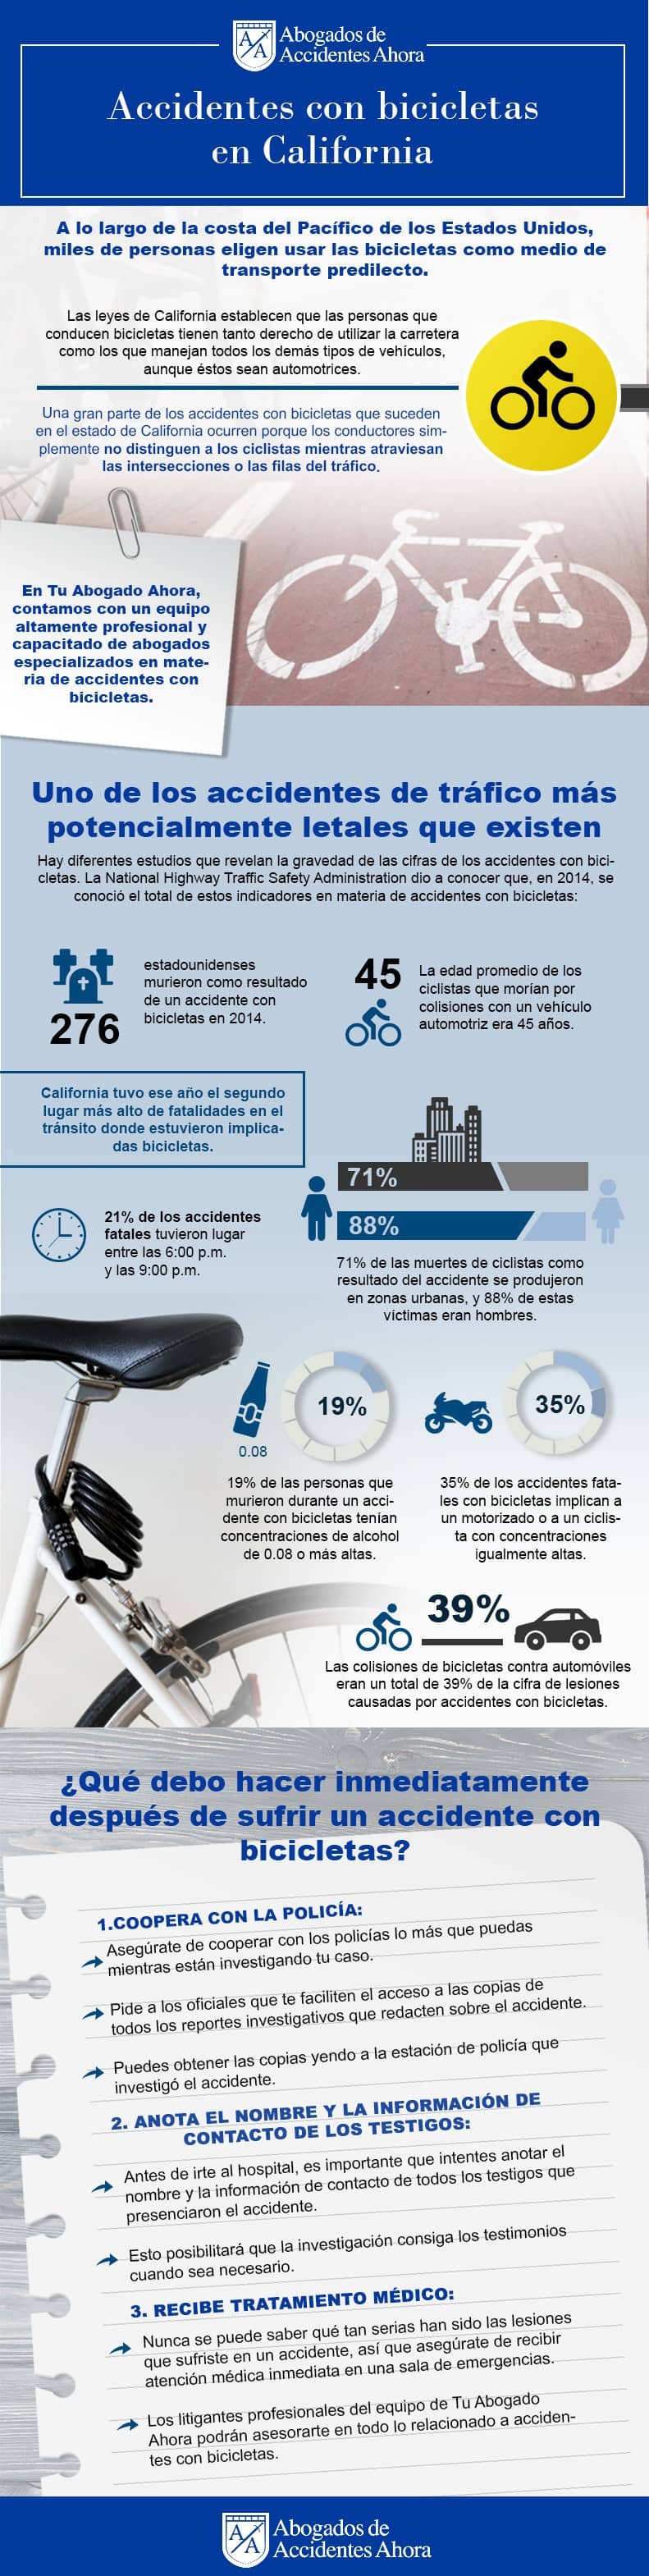 Accidentes con bicicletas en California, Abogados de Accidentes Ahora